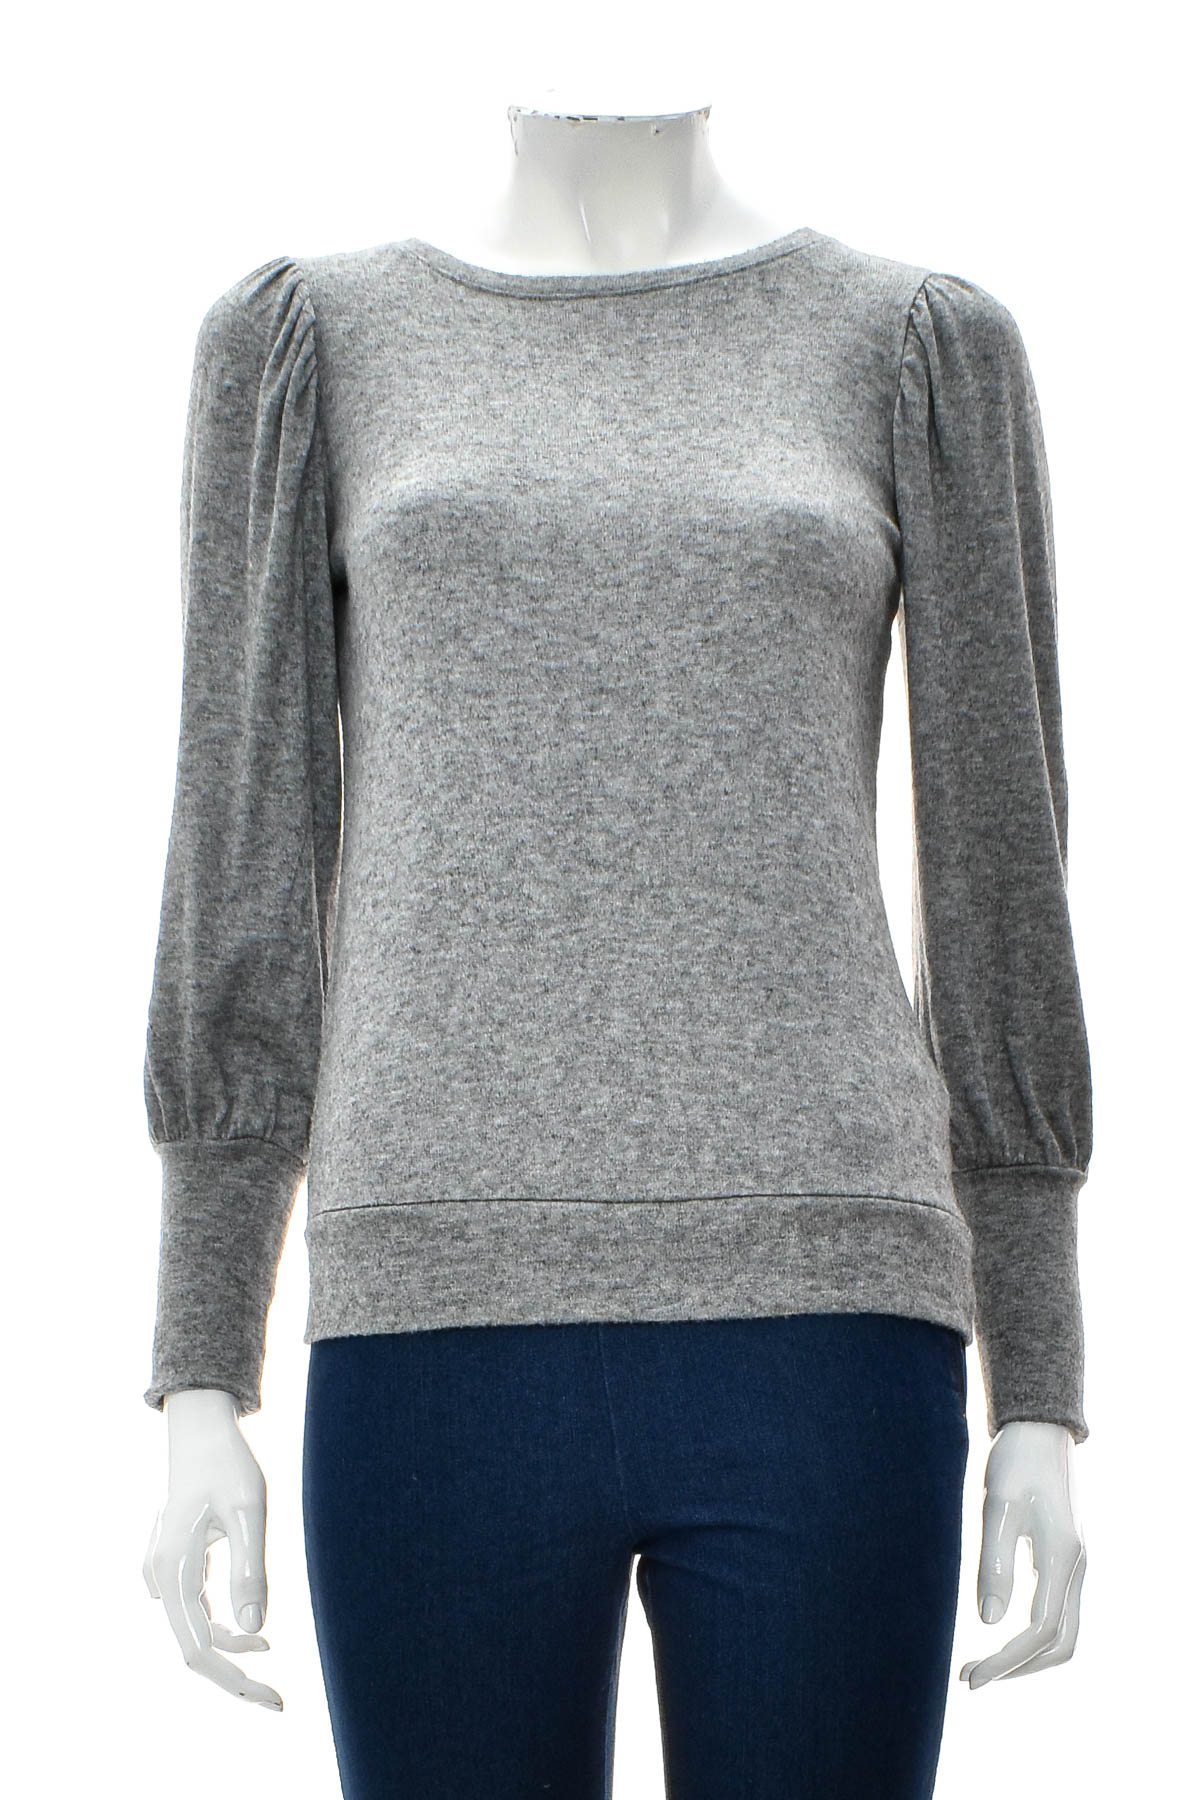 Women's sweater - Lauren Conrad - 0